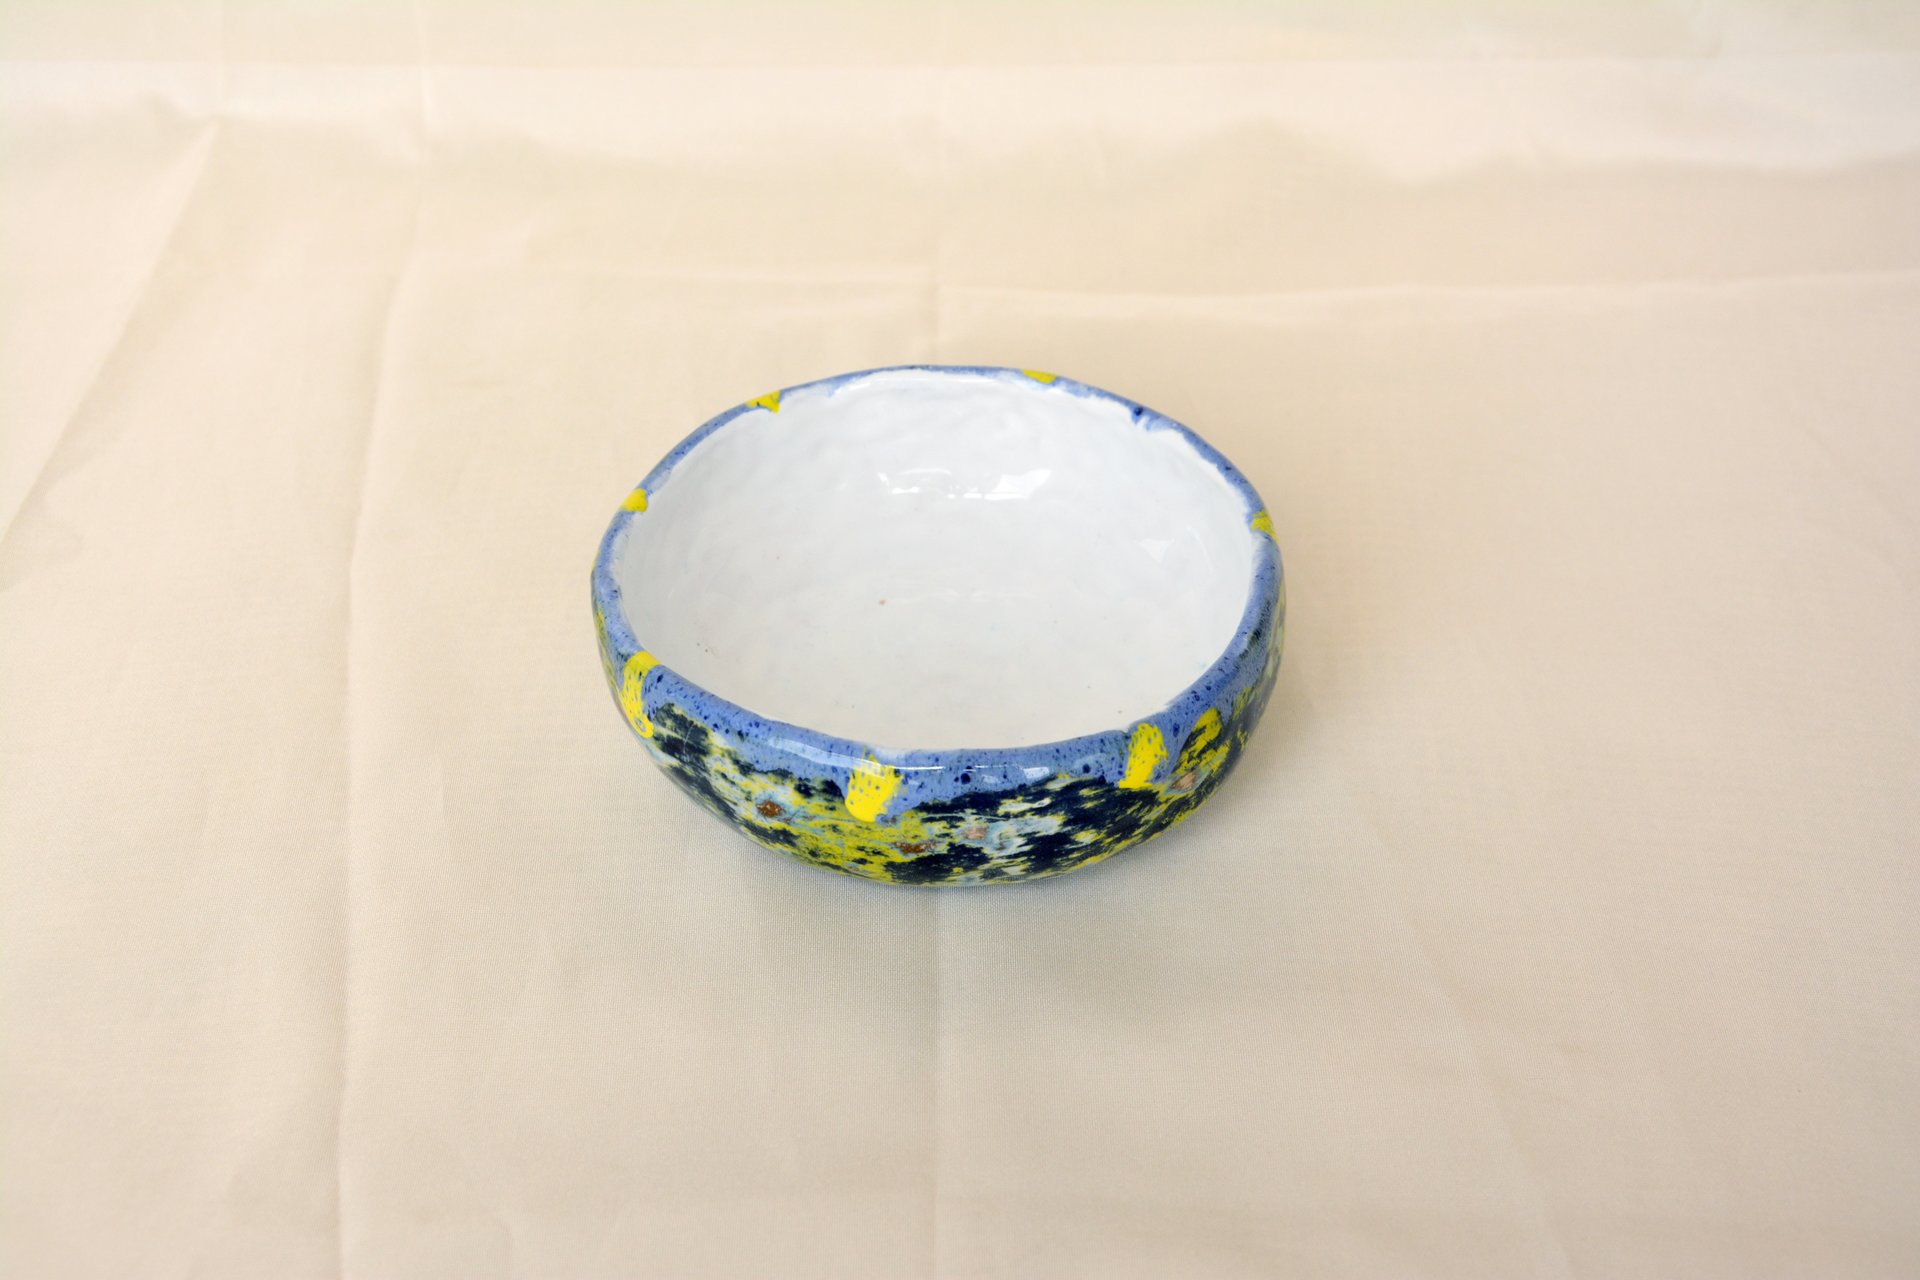 Многослойная синяя - Керамические тарелки, диаметр - 11,5 см, высота - 4 см, фото 2 из 3.